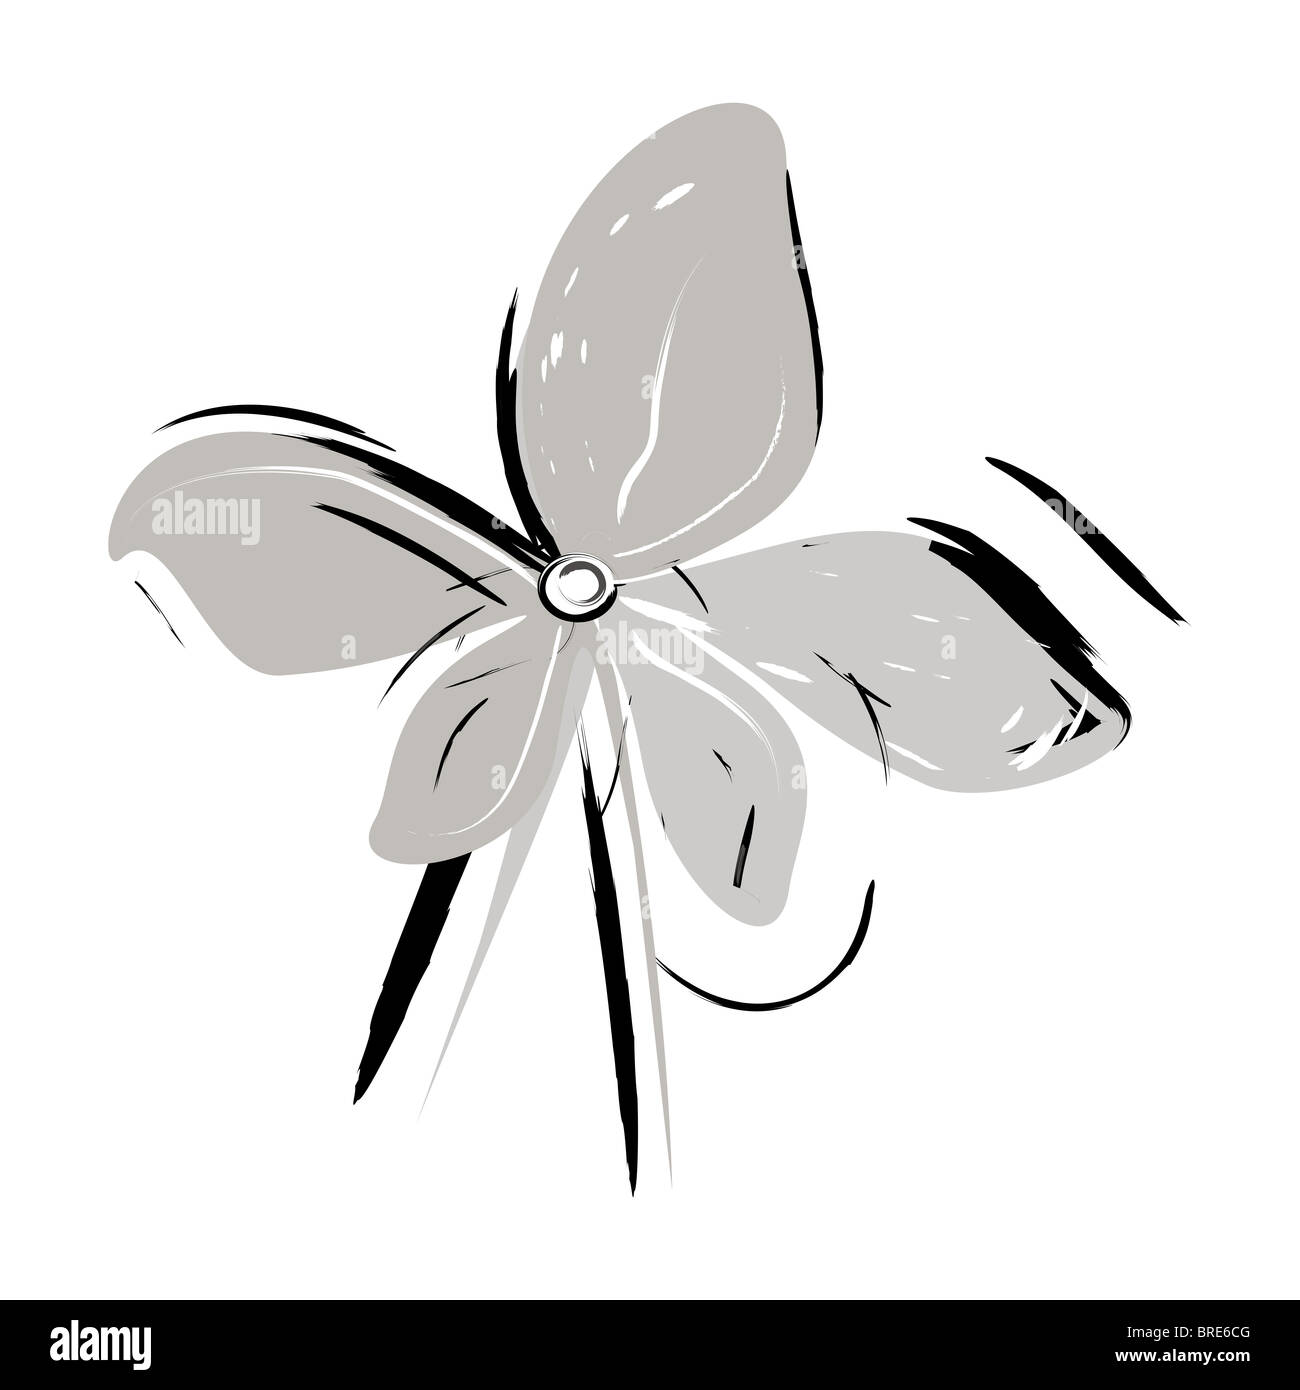 Schwarzweiß, Graustufen-Vektor, eins, einzelne offene Blüte in voller Blüte Illustration, weißer Hintergrund Stockfoto